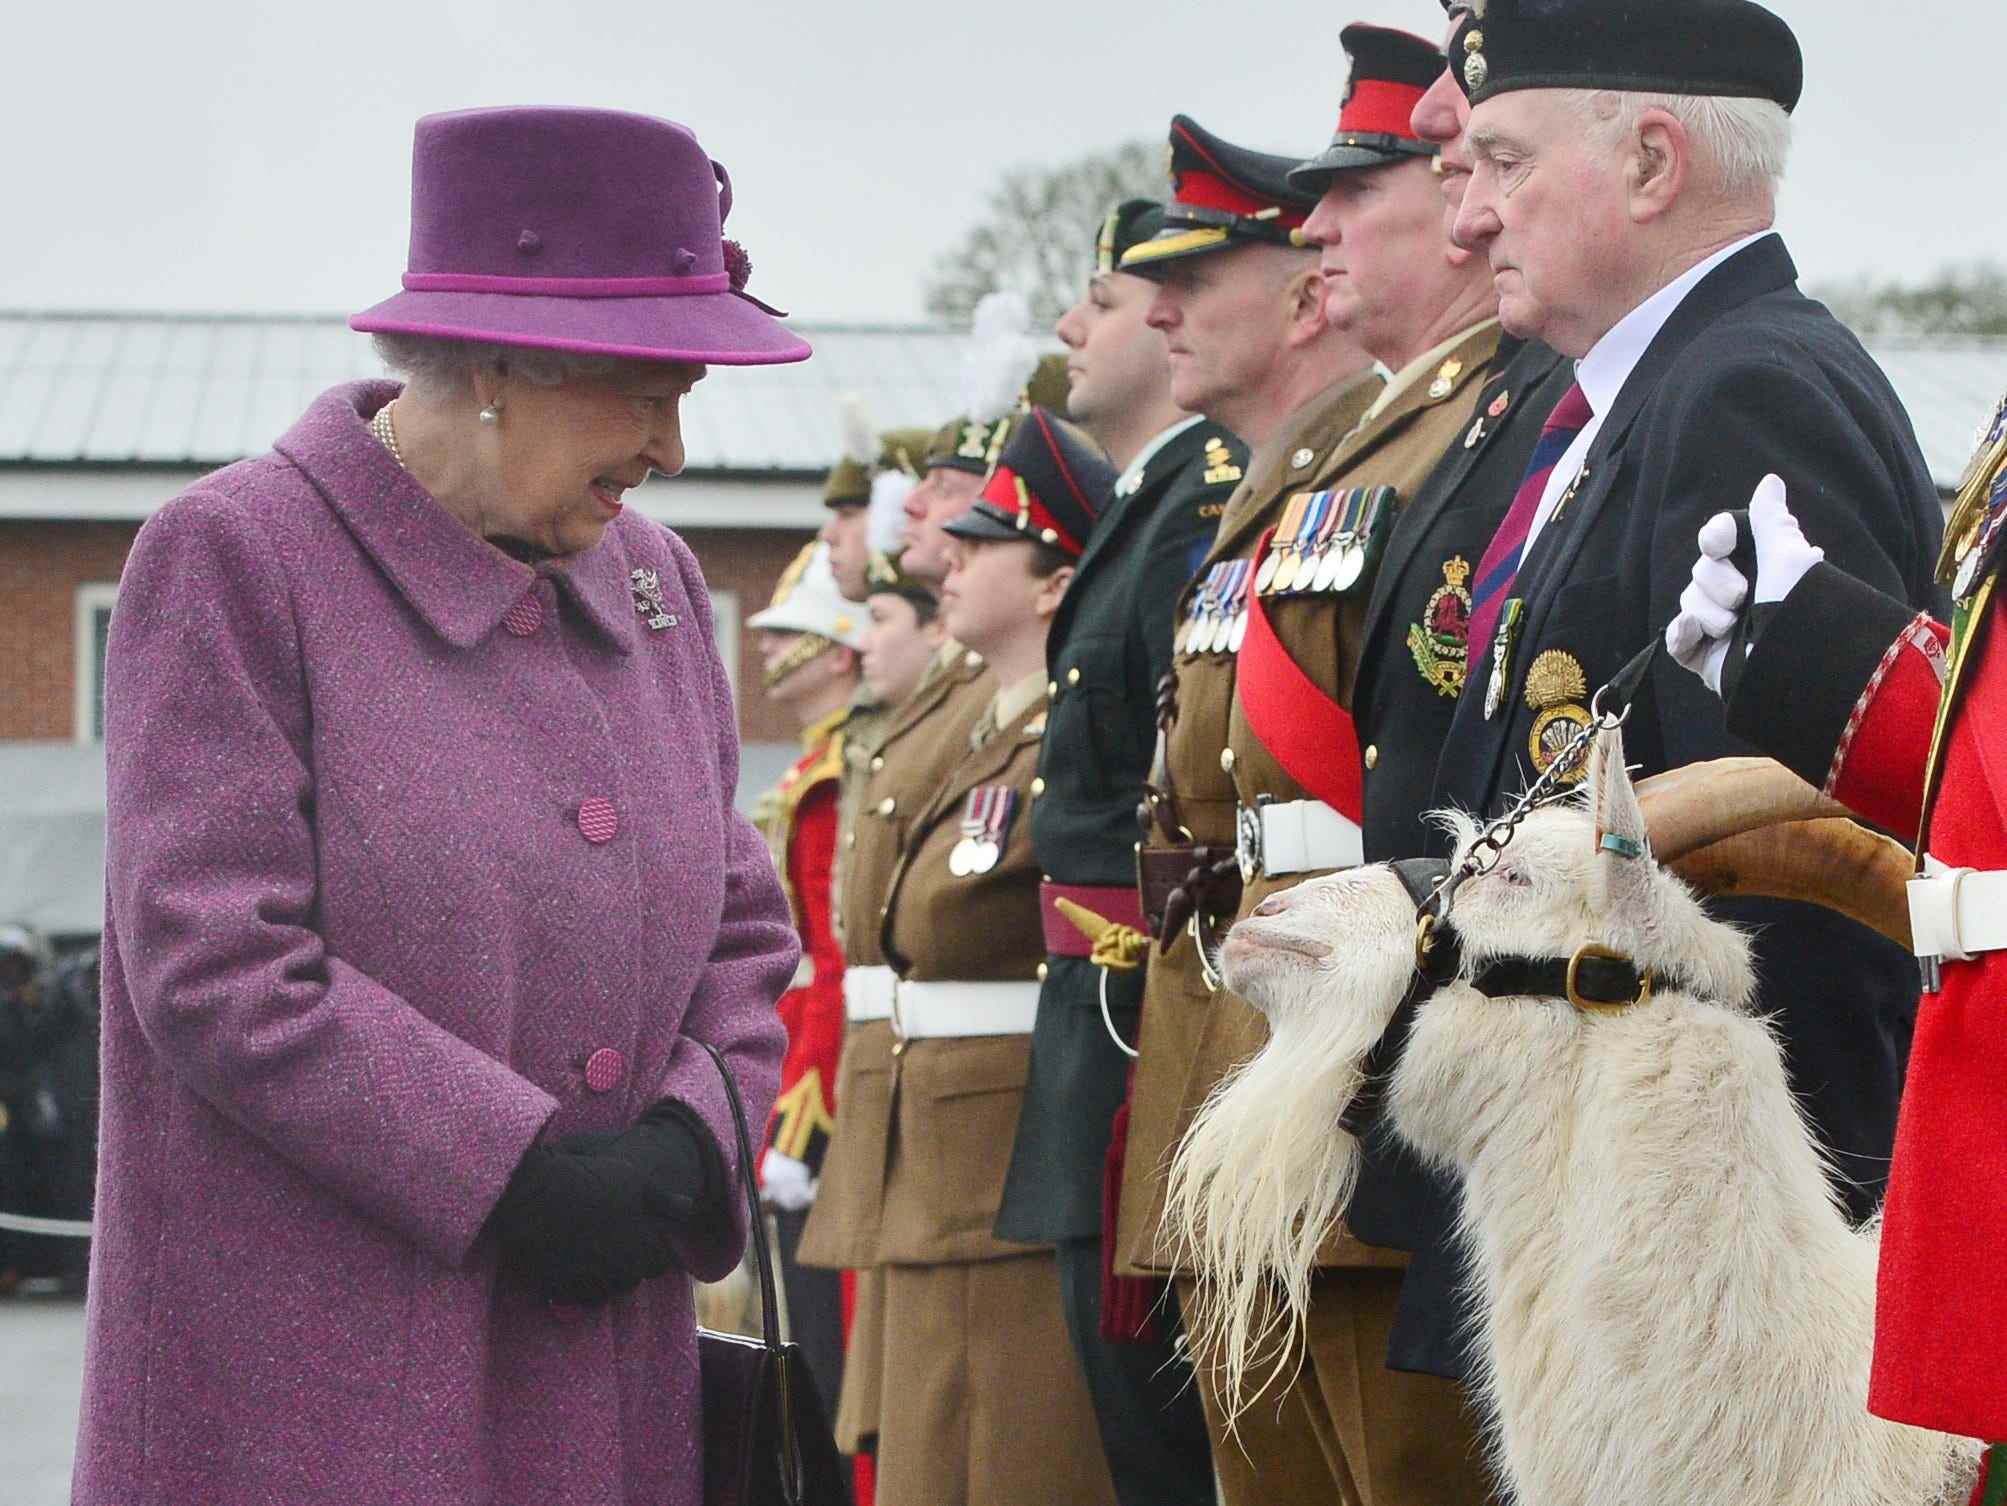 Queen Elizabeth begegnet einer Ziege